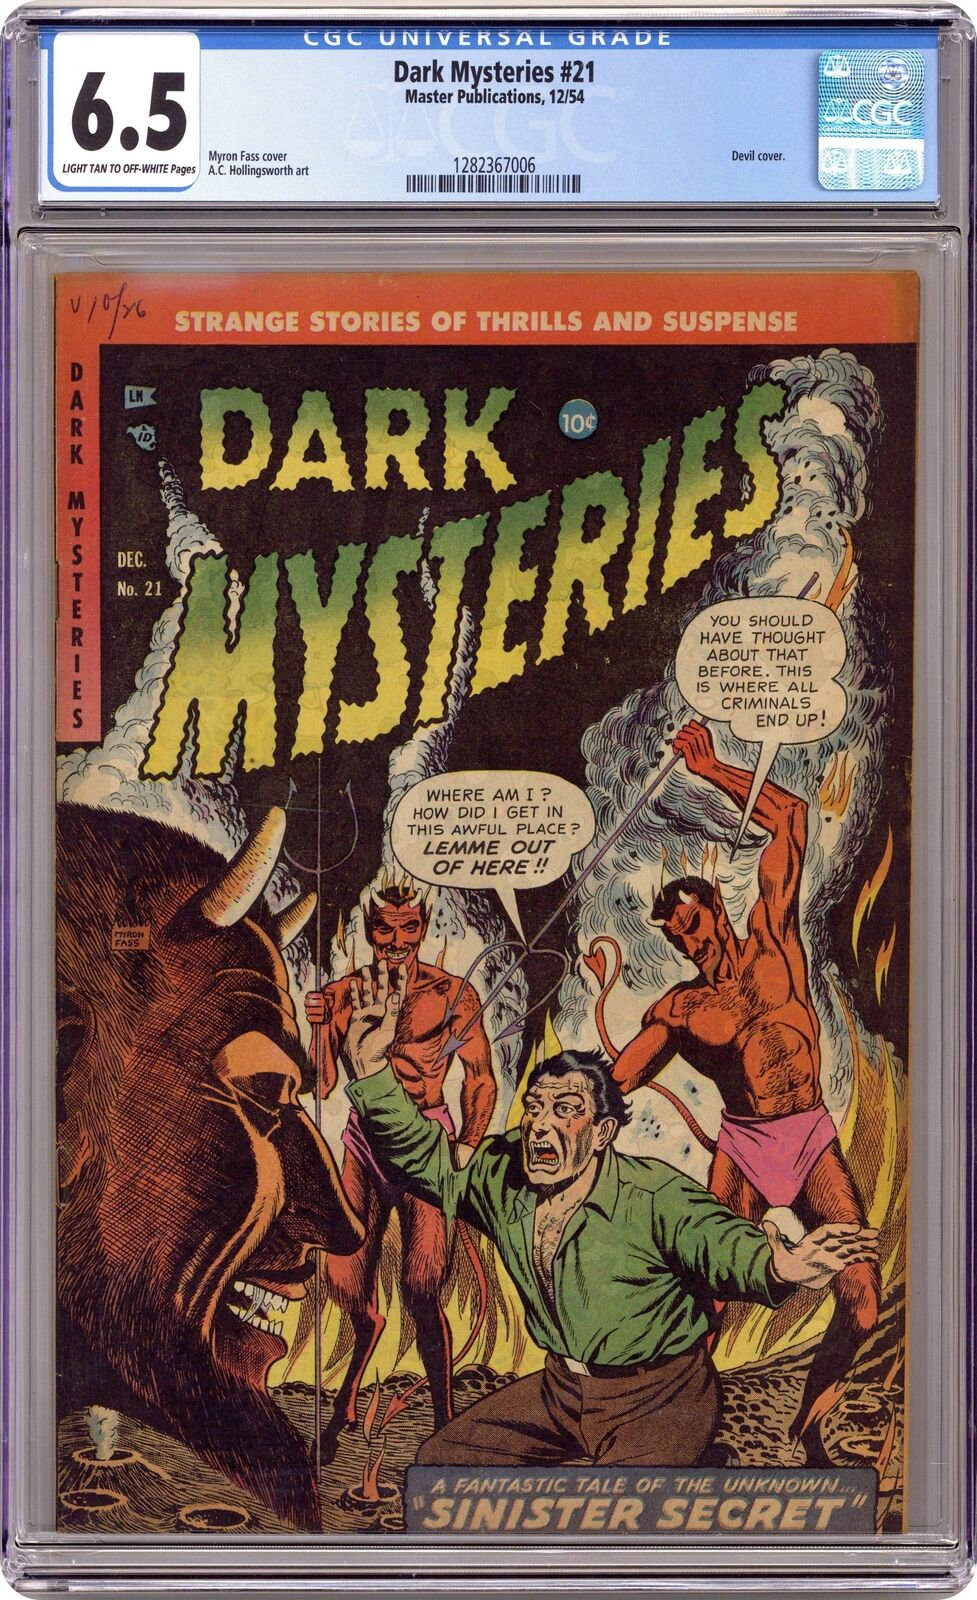 Dark Mysteries #21 CGC 6.5 1954 1282367006